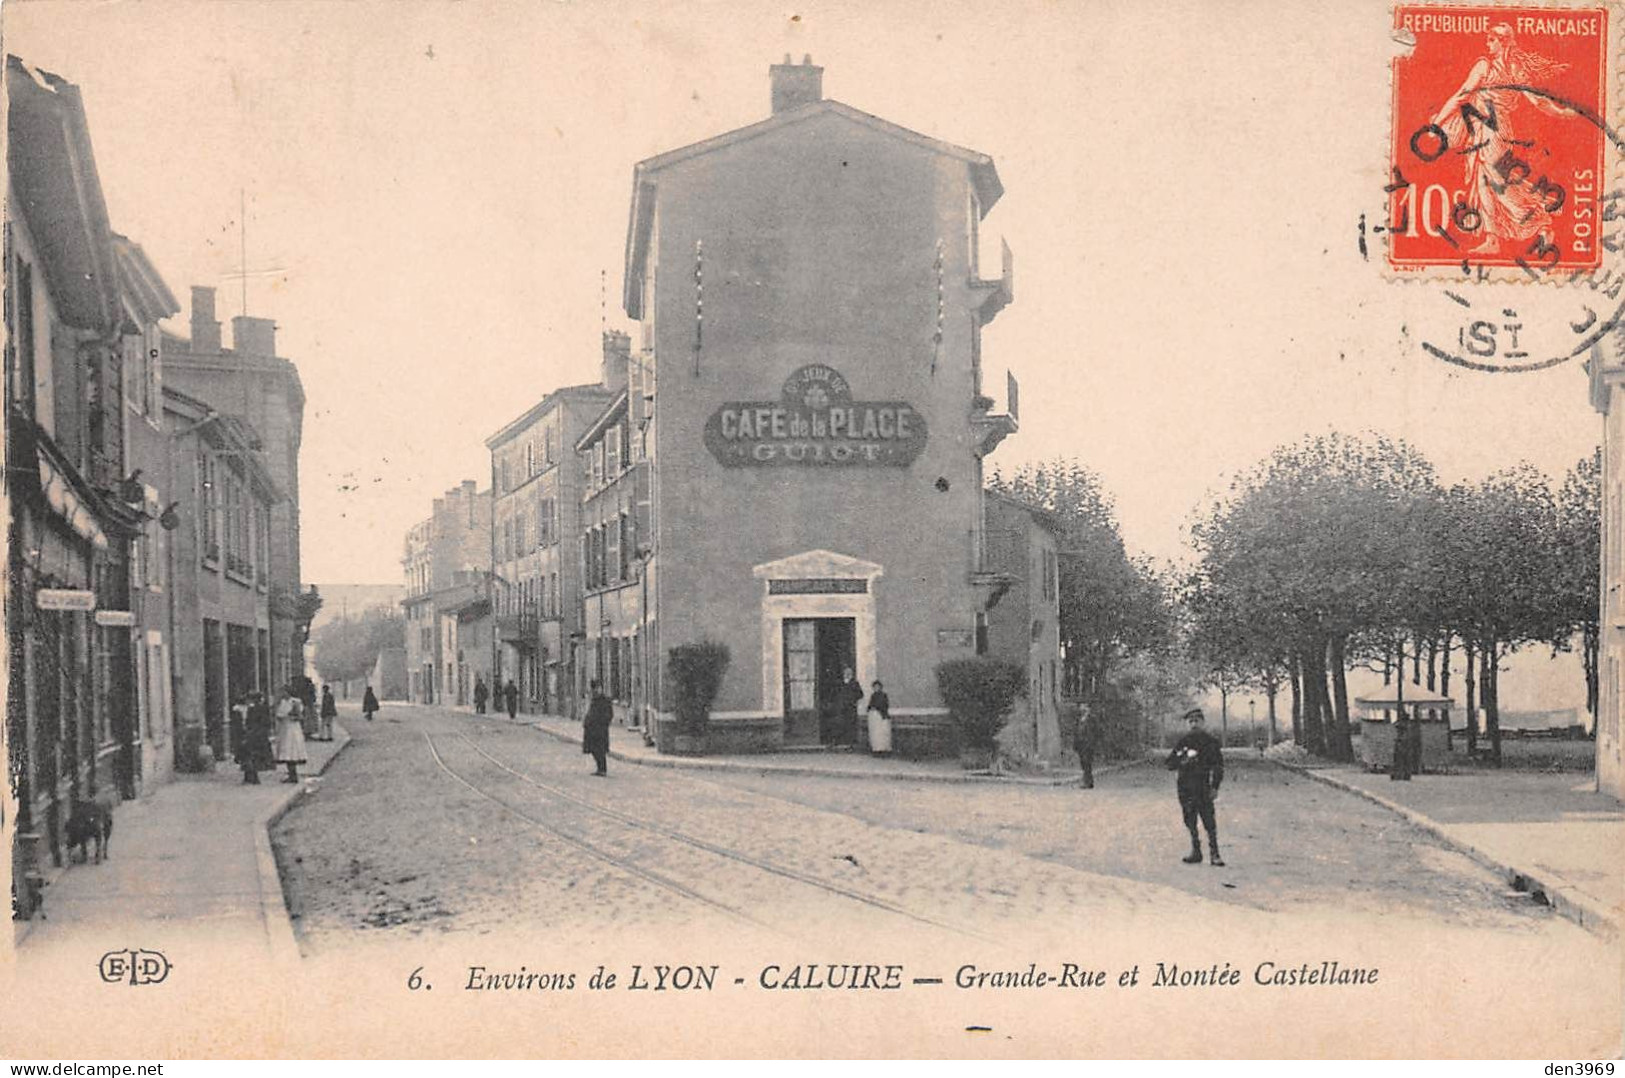 CALUIRE (Rhône) - Grande Rue Et Montée Castellane - Café De La Place Guiot, Voie Ferrée Tramway - Voyagé 1913 (2 Scans) - Caluire Et Cuire